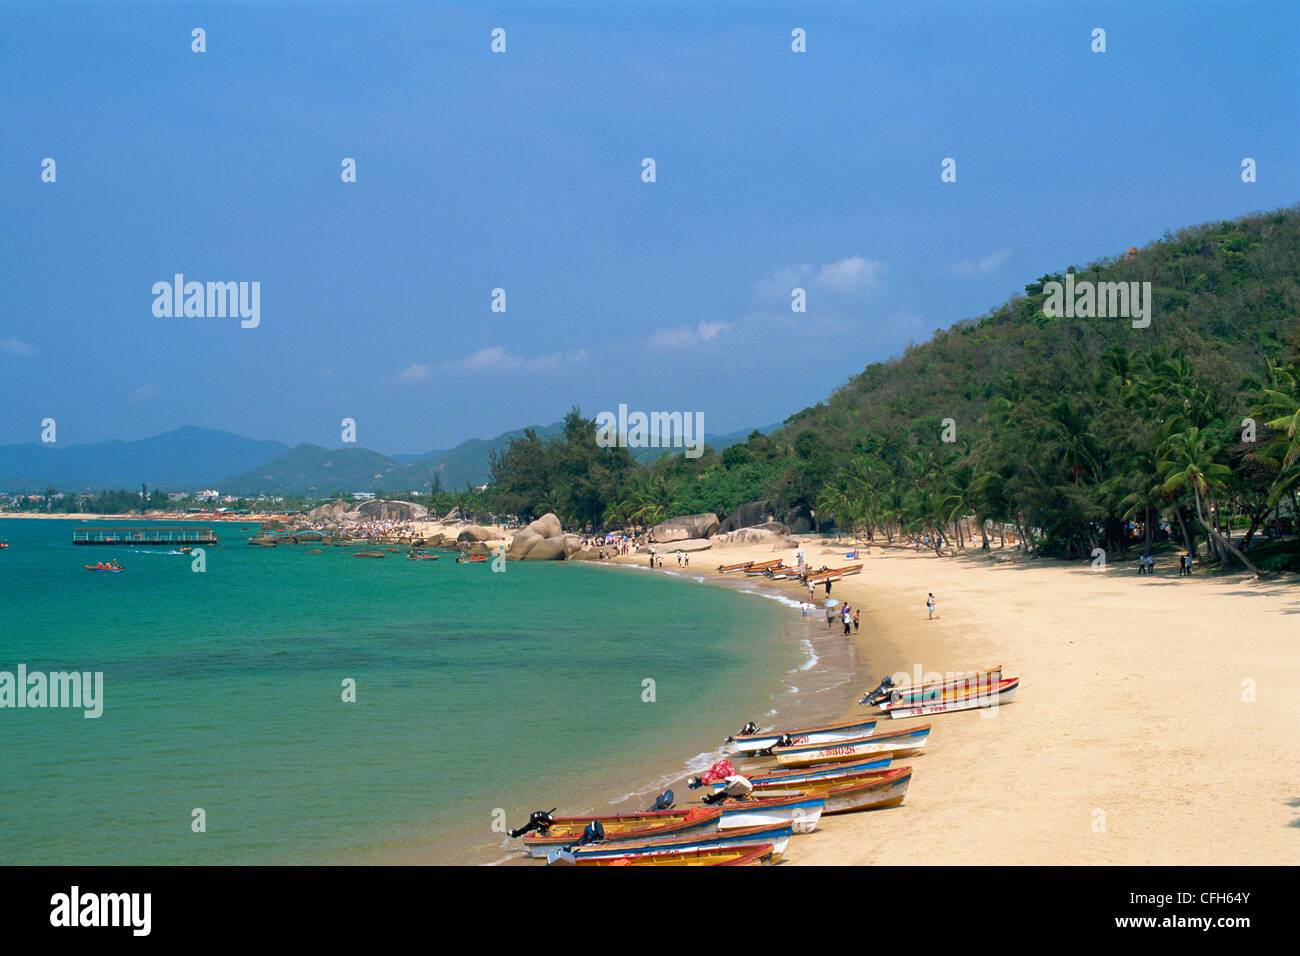 China, Hainan Island, Sanya, Beach Scene at Tianya-Haijiao Tourist Zone Stock Photo